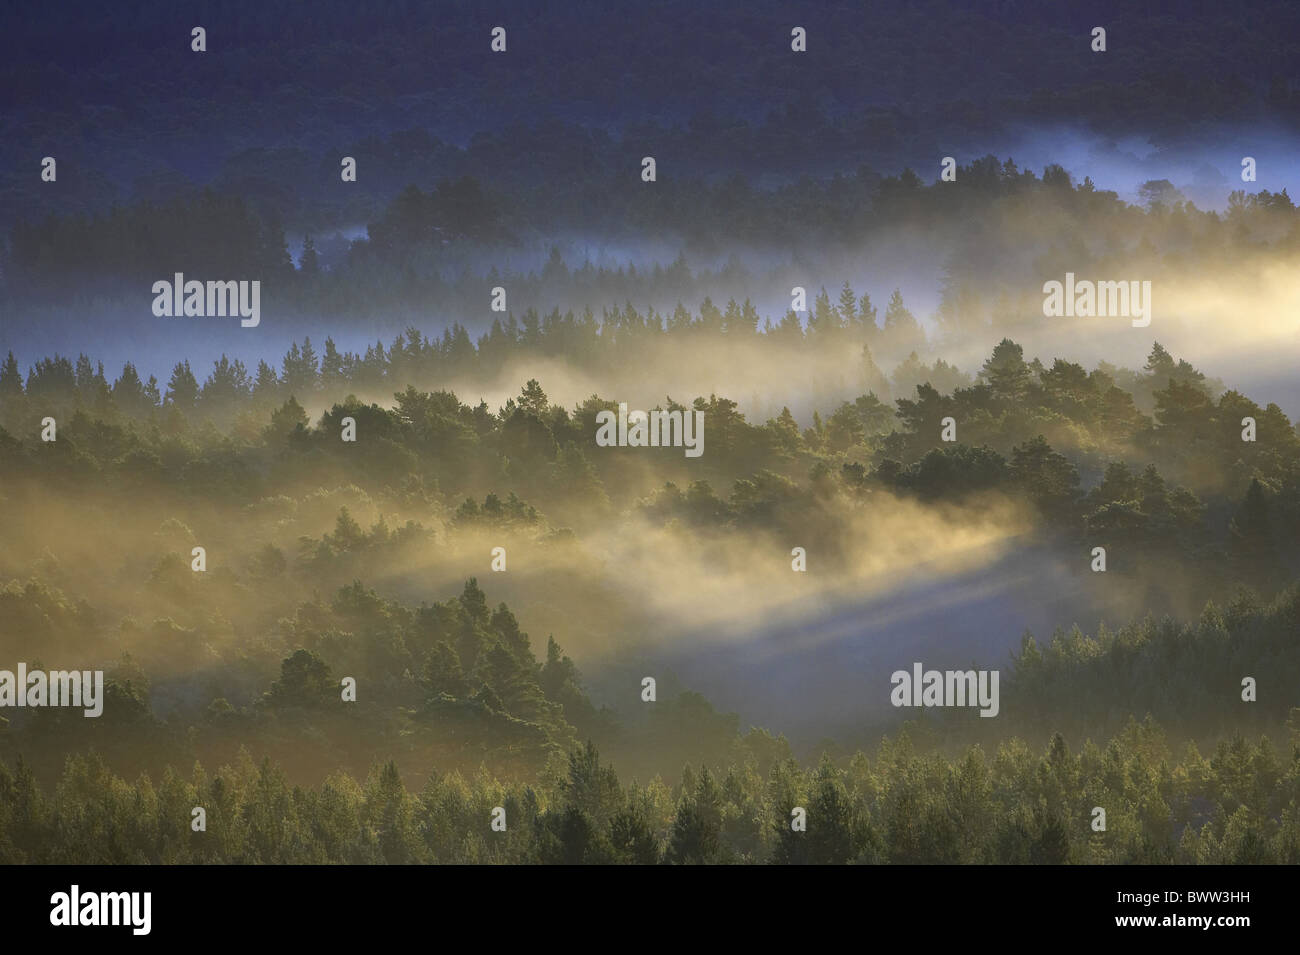 Di Pino silvestre (Pinus sylvestris) foresta nella nebbia all'alba, Caledonian foresta, Rothiemurchus foresta, Cairngorms N.P., altopiani, Foto Stock